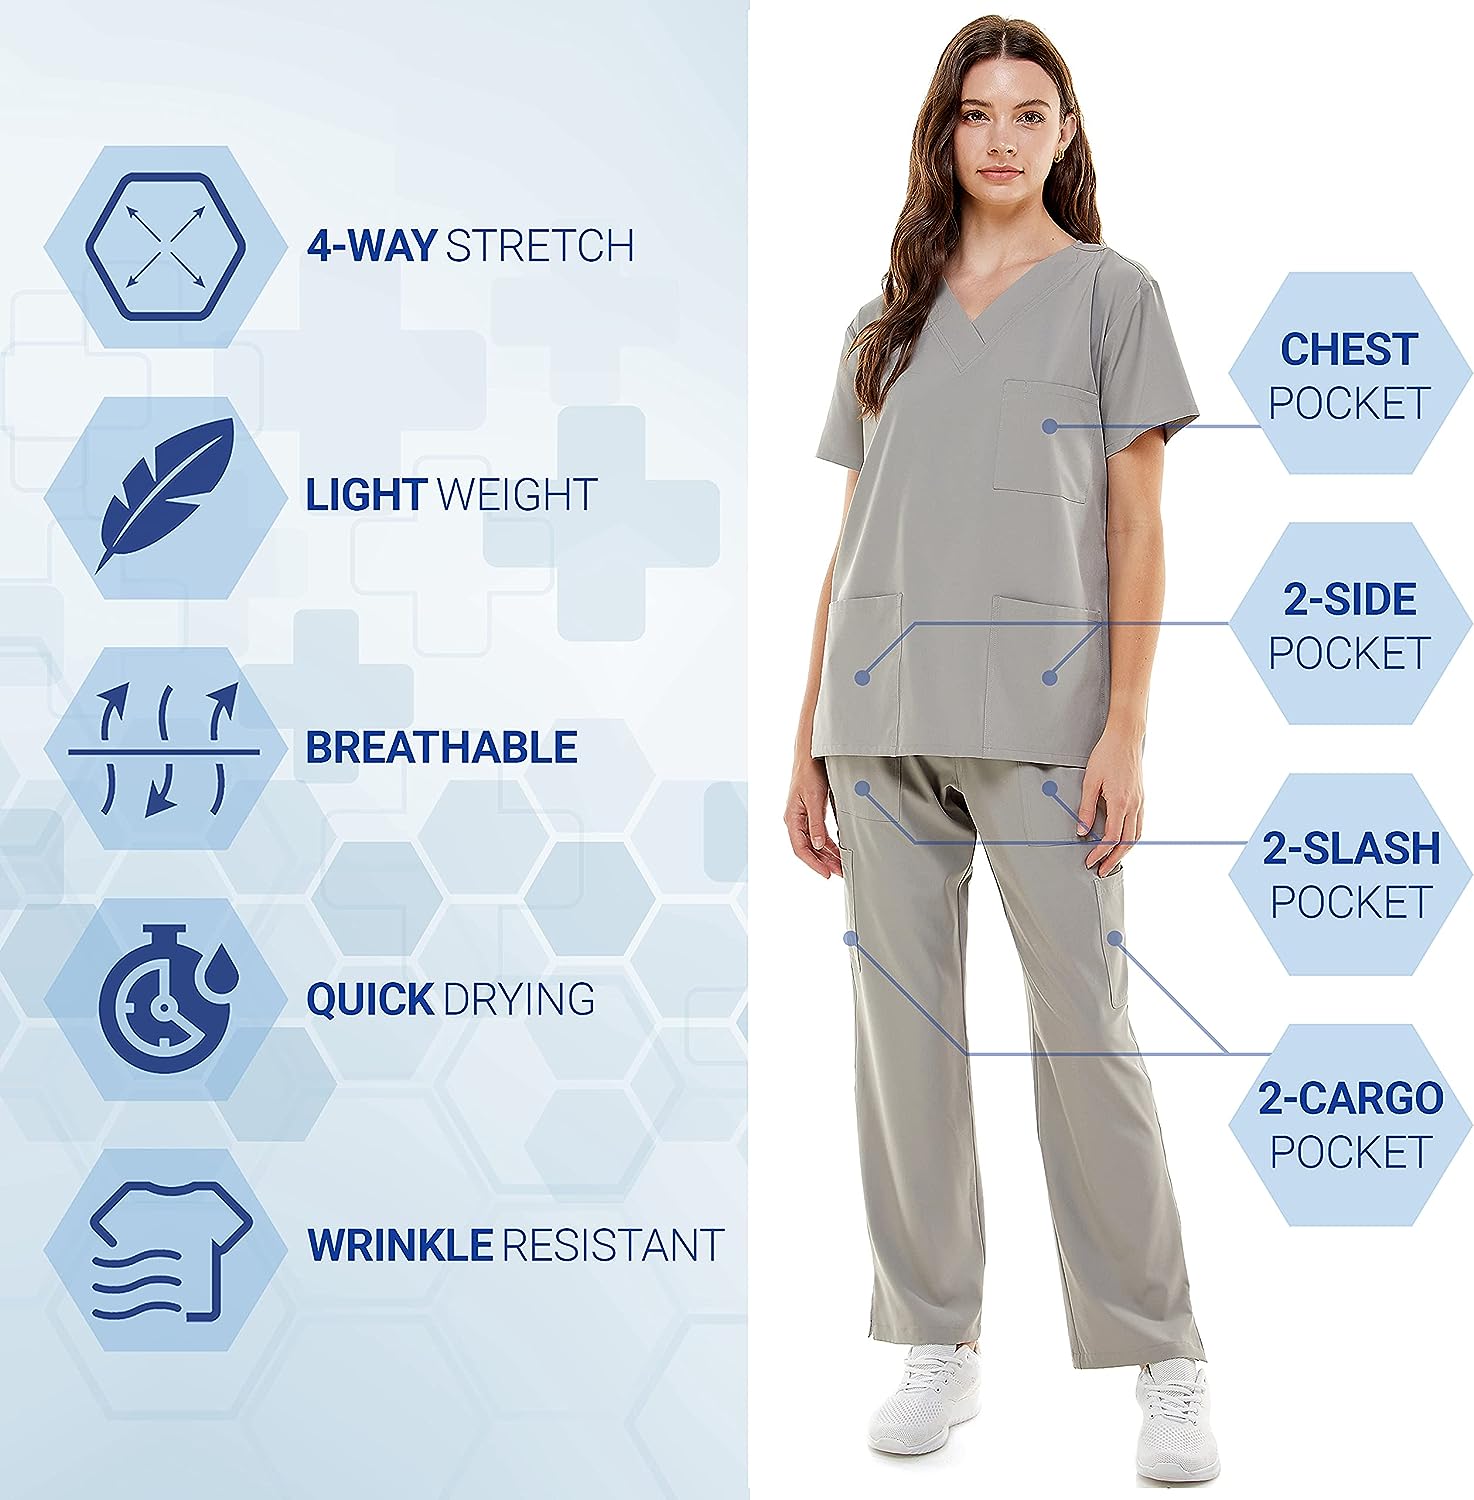 MEDPIA Women’s Medical Uniform Set Review